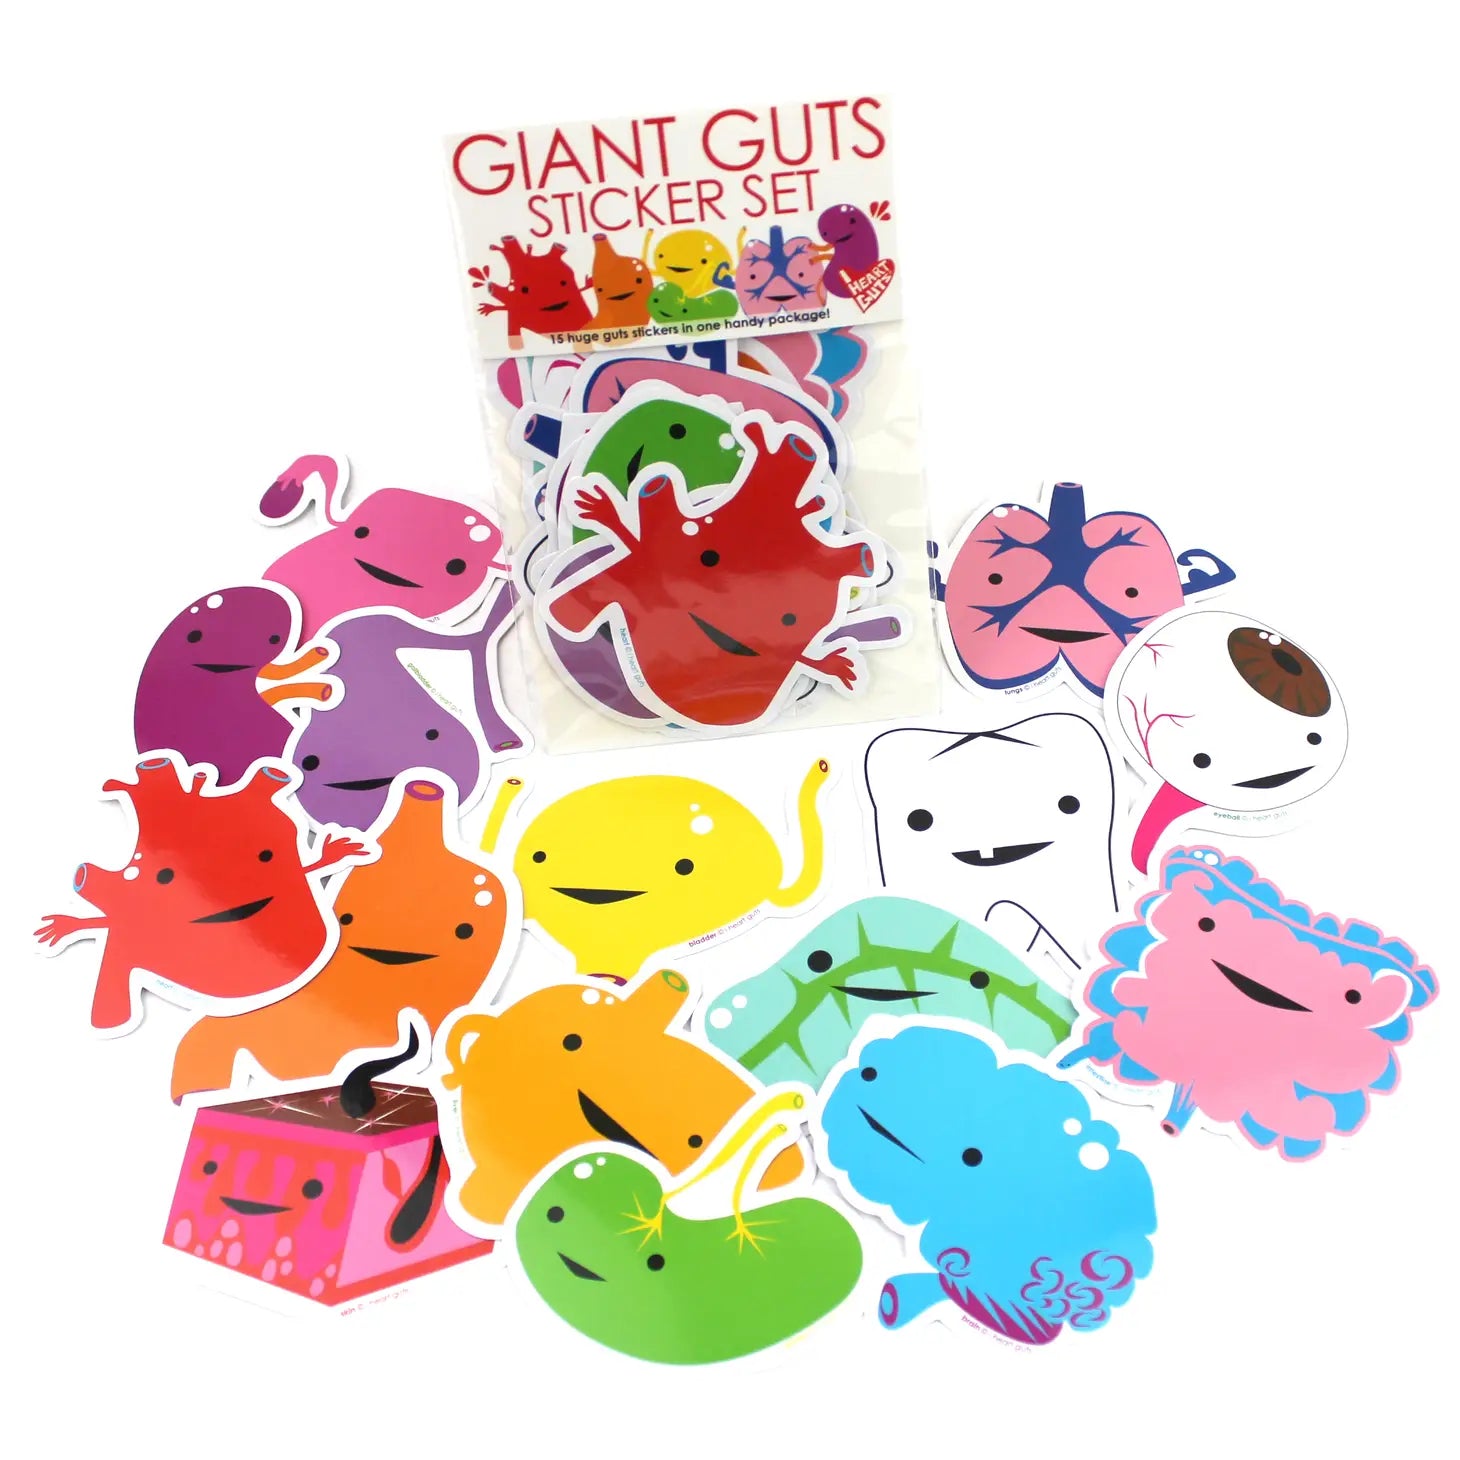 Giant Guts Sticker Set "15 Organs & Friends"